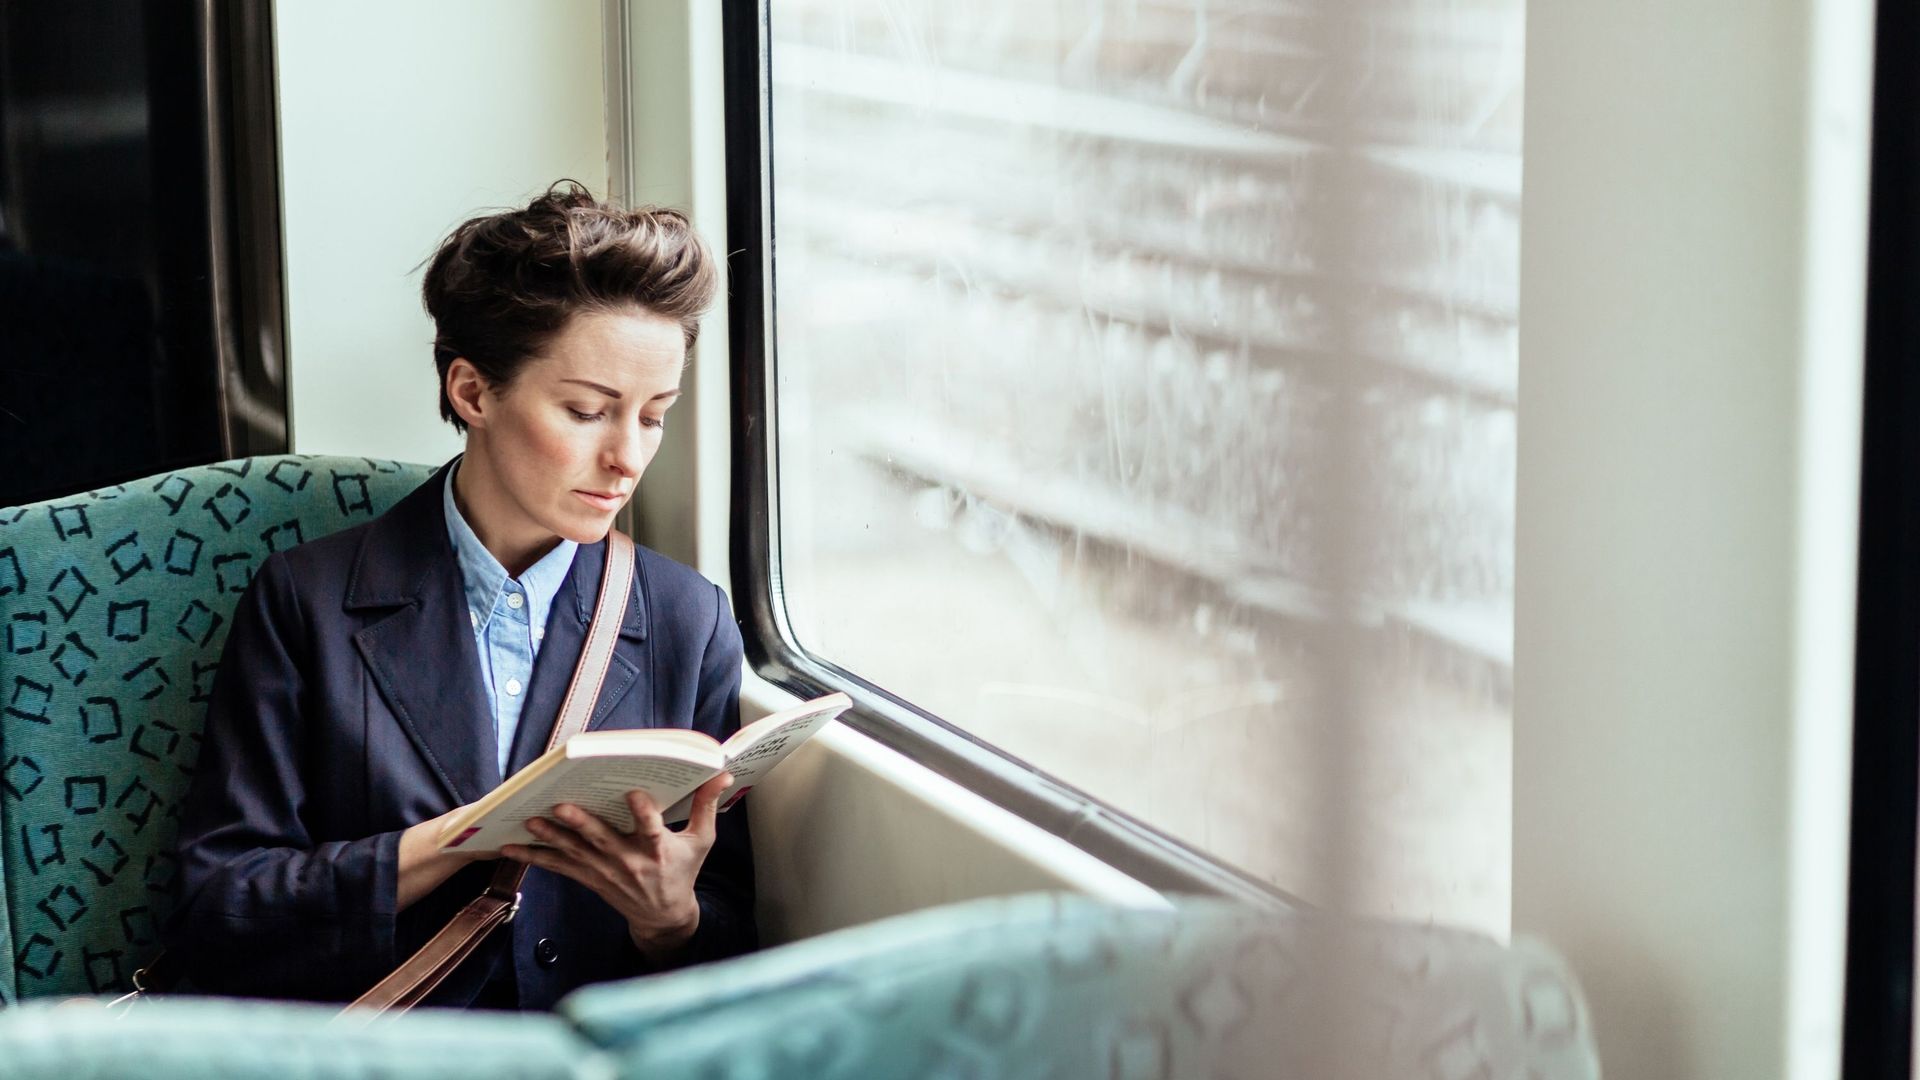 Femme lisant un livre dans un train.